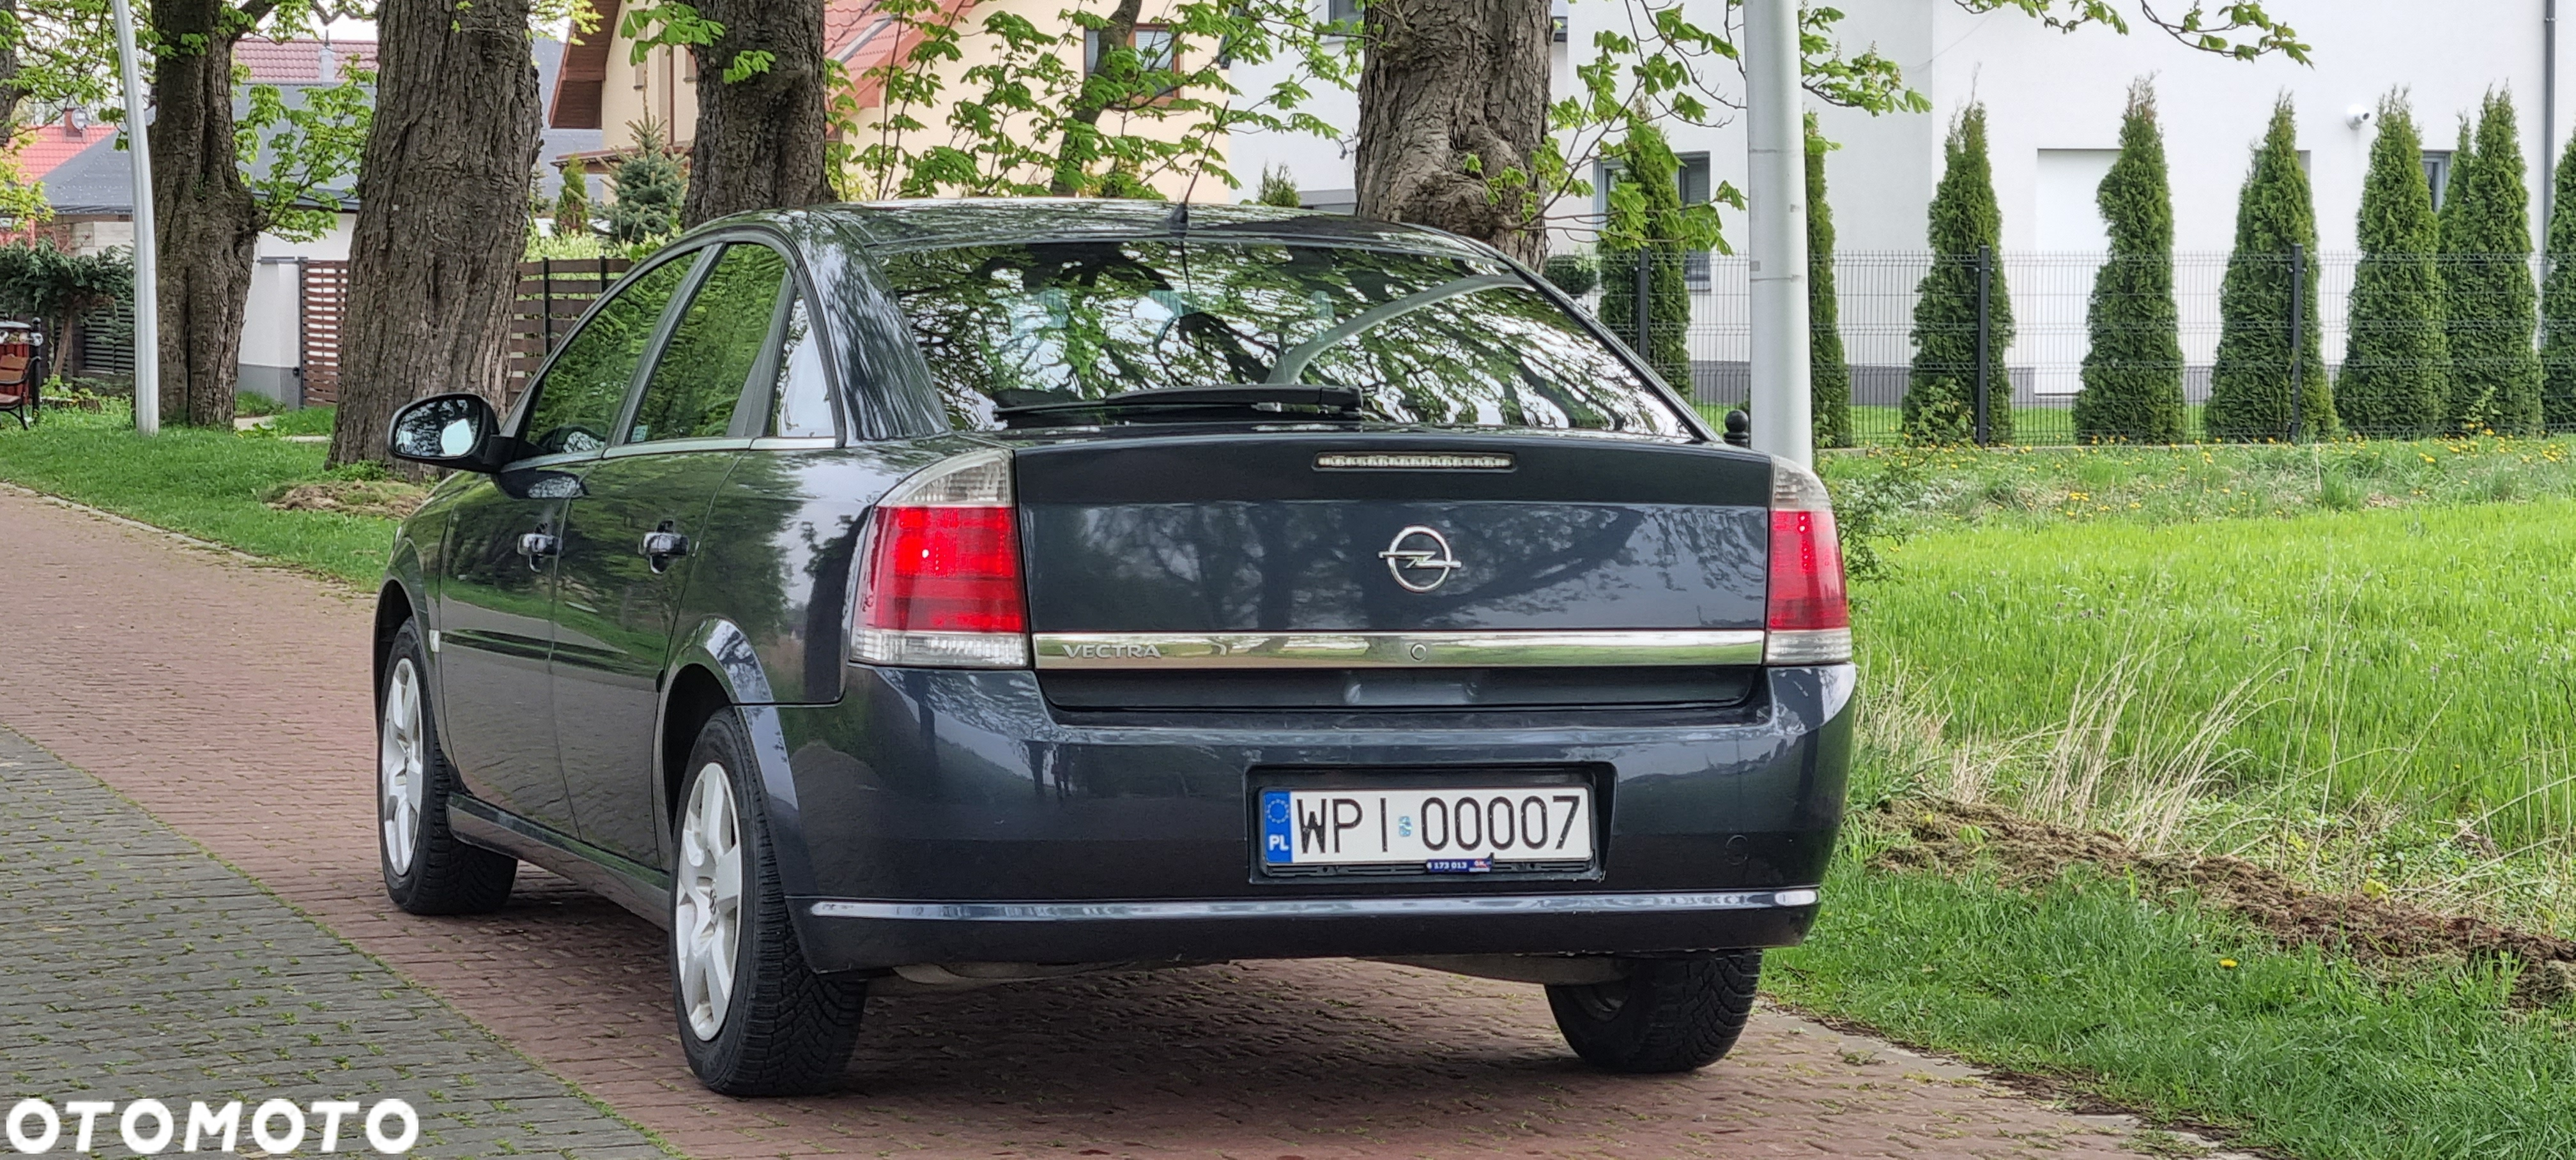 Opel Vectra 1.9 CDTI Sport - 23